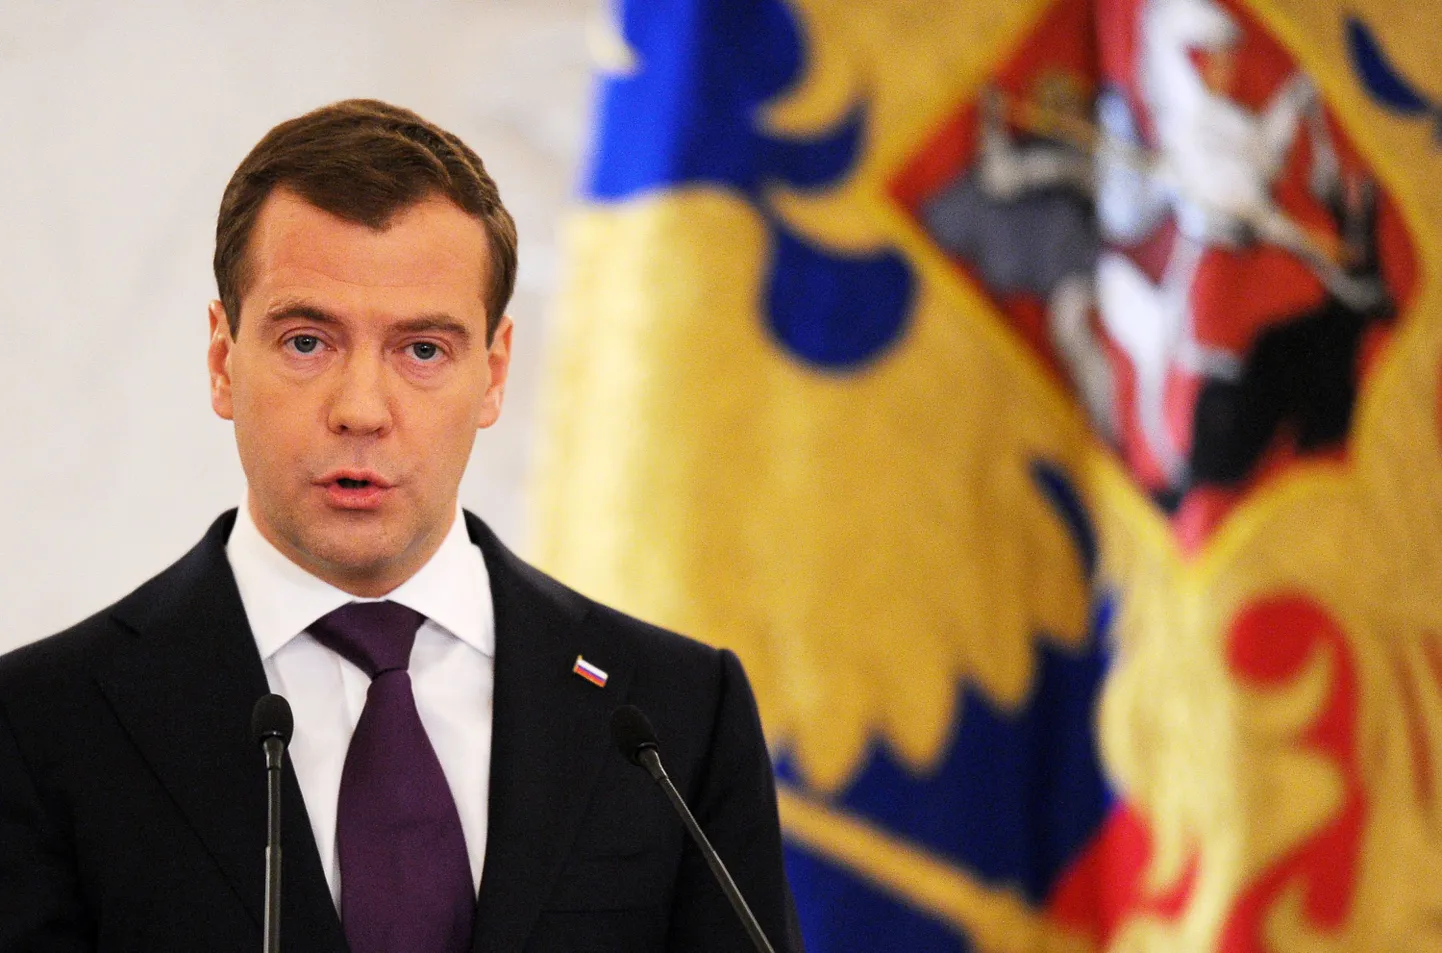 Dimitri Medvedev.